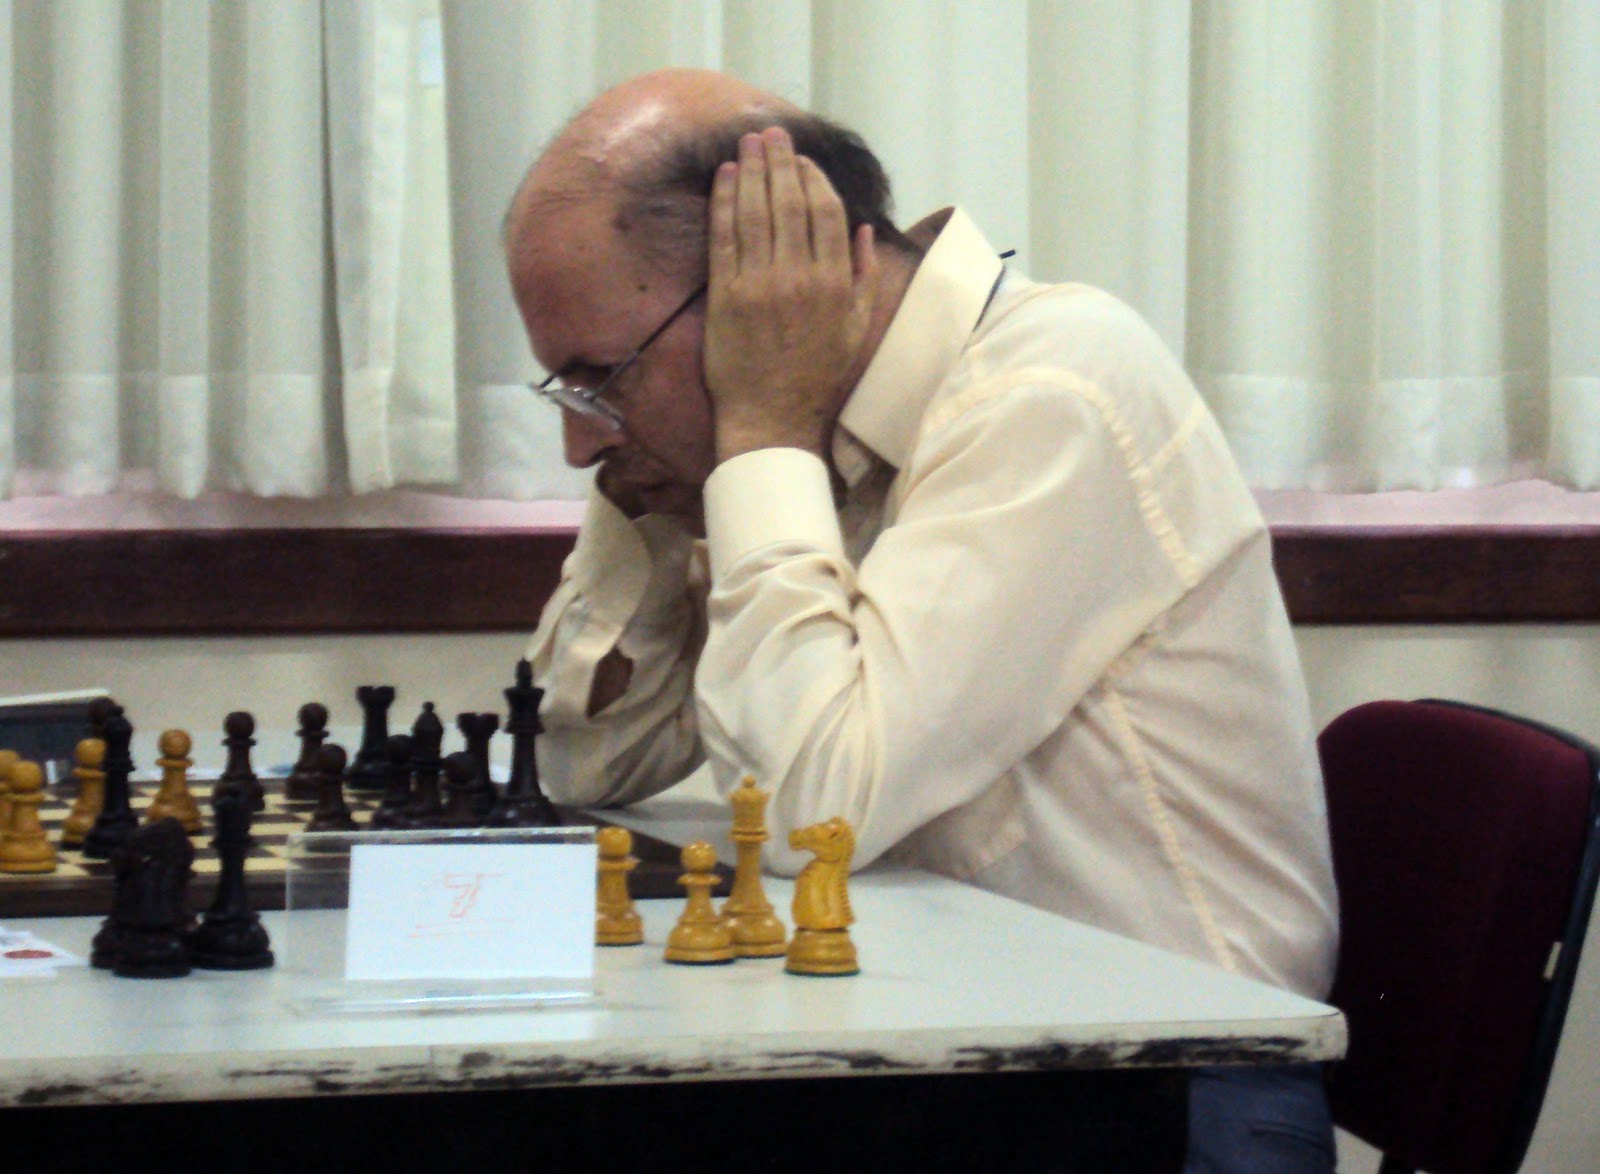 Campeonato traz mestres do xadrez, como Matsuura e Mequinho, a